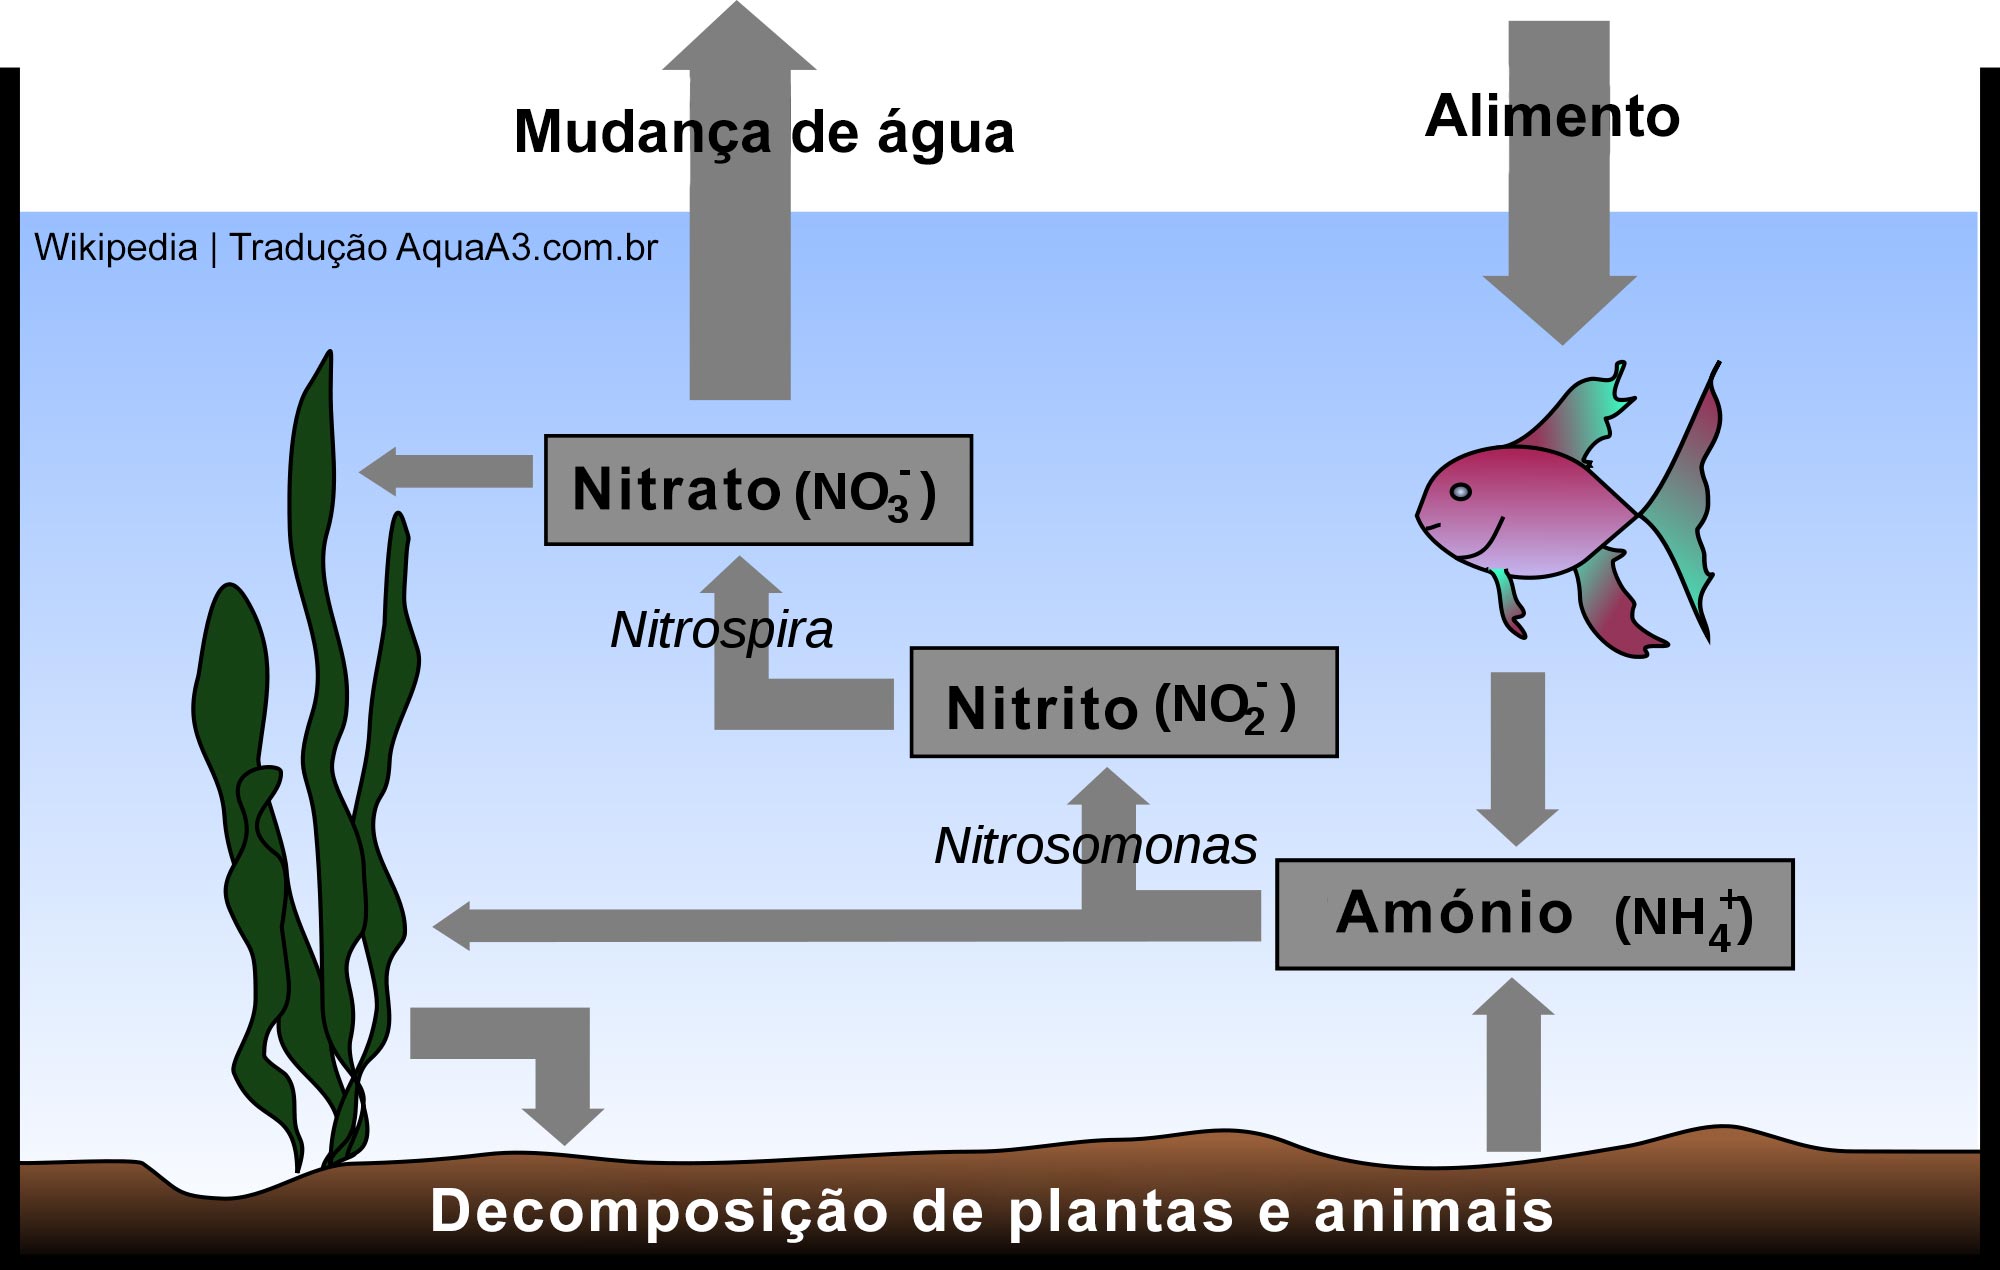 o ciclo do nitrogênio em um aquário e a Amônia